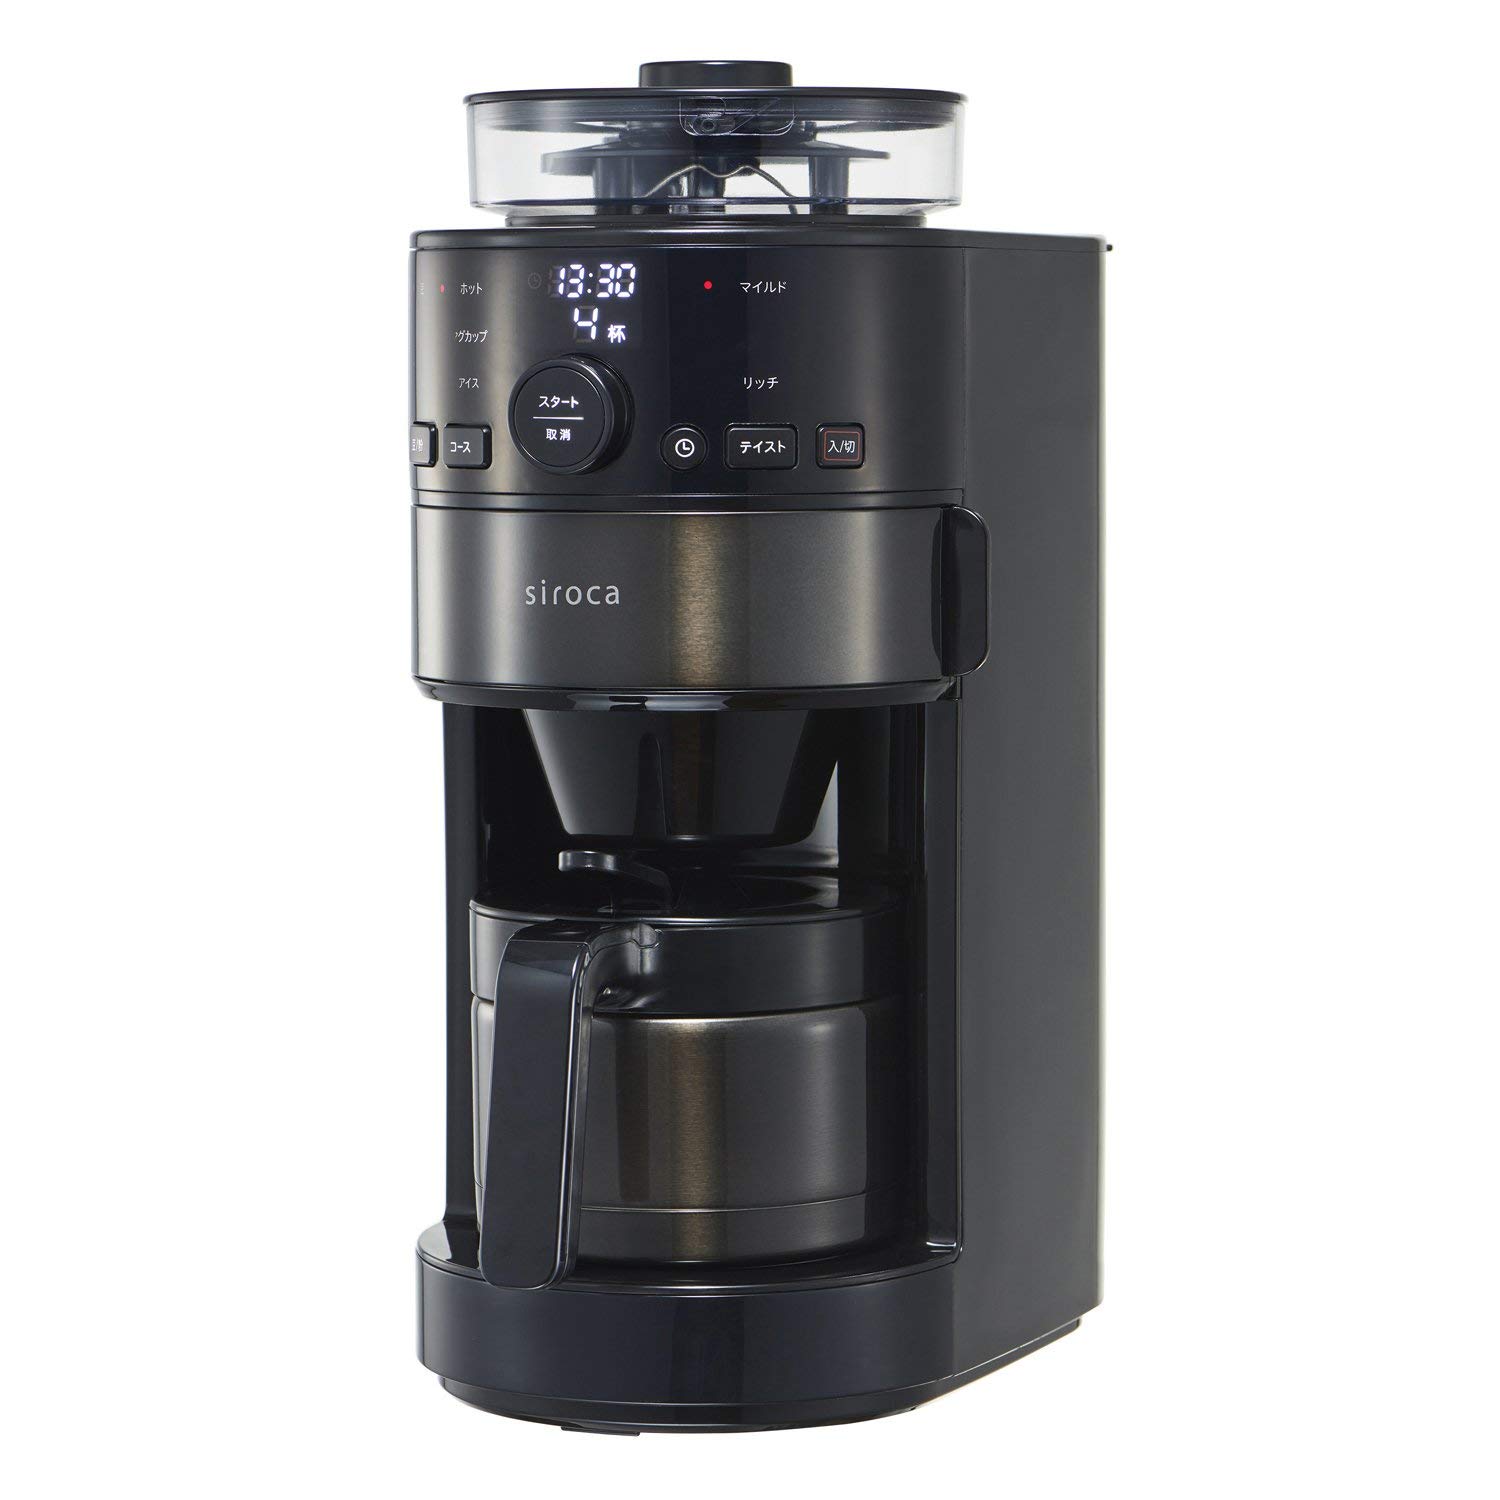 日本必買 siroca SIROCA SC-C121 全自動保溫咖啡機 研磨咖啡機 磨豆機 美式 黑咖啡 咖啡豆和咖啡粉兩用機型 日本必買代購